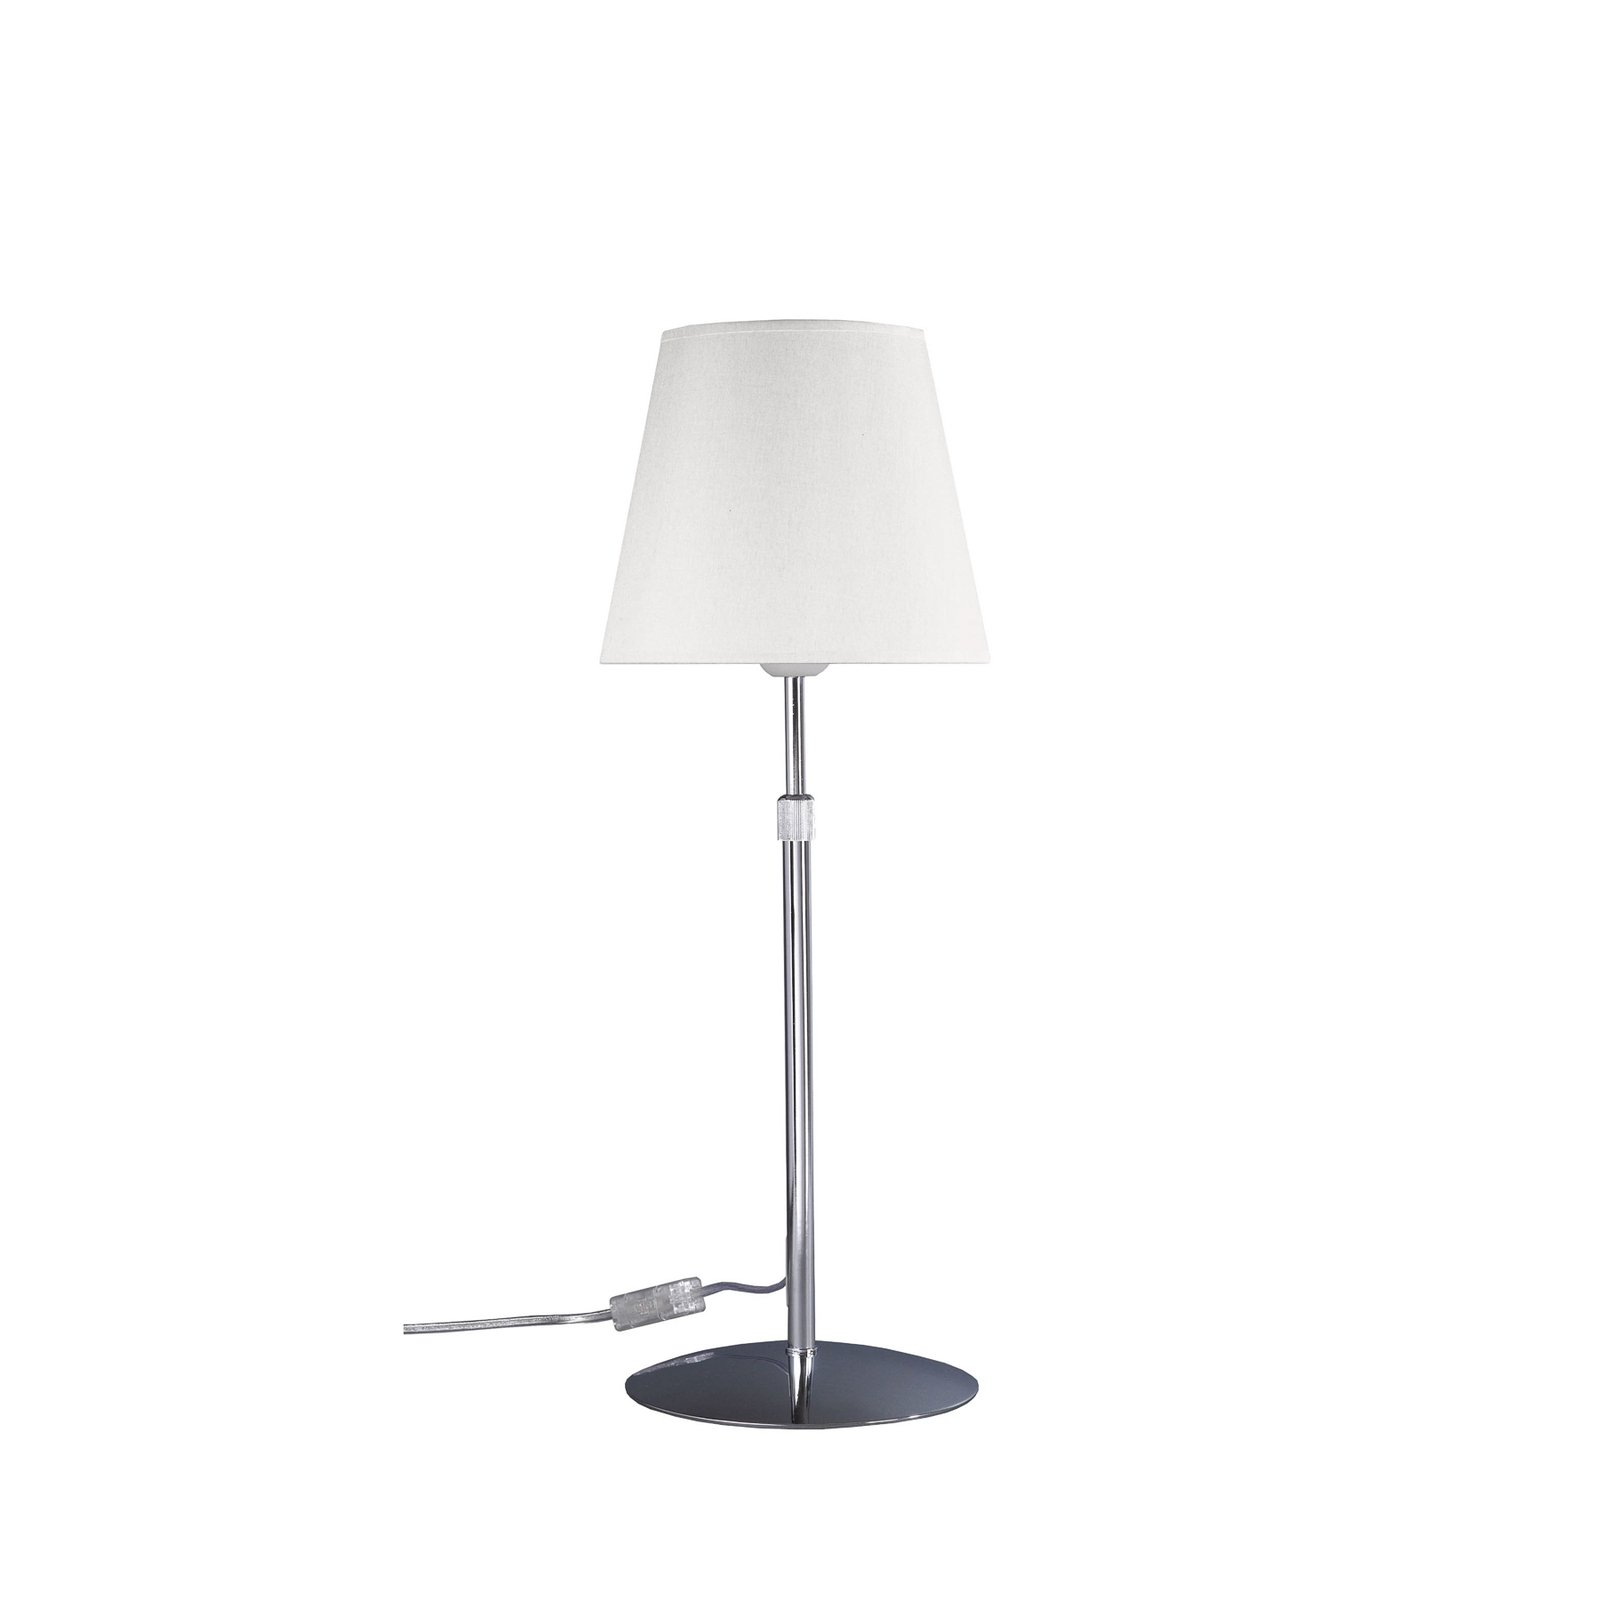 Aluminor Store lampada da tavolo, cromo/bianco